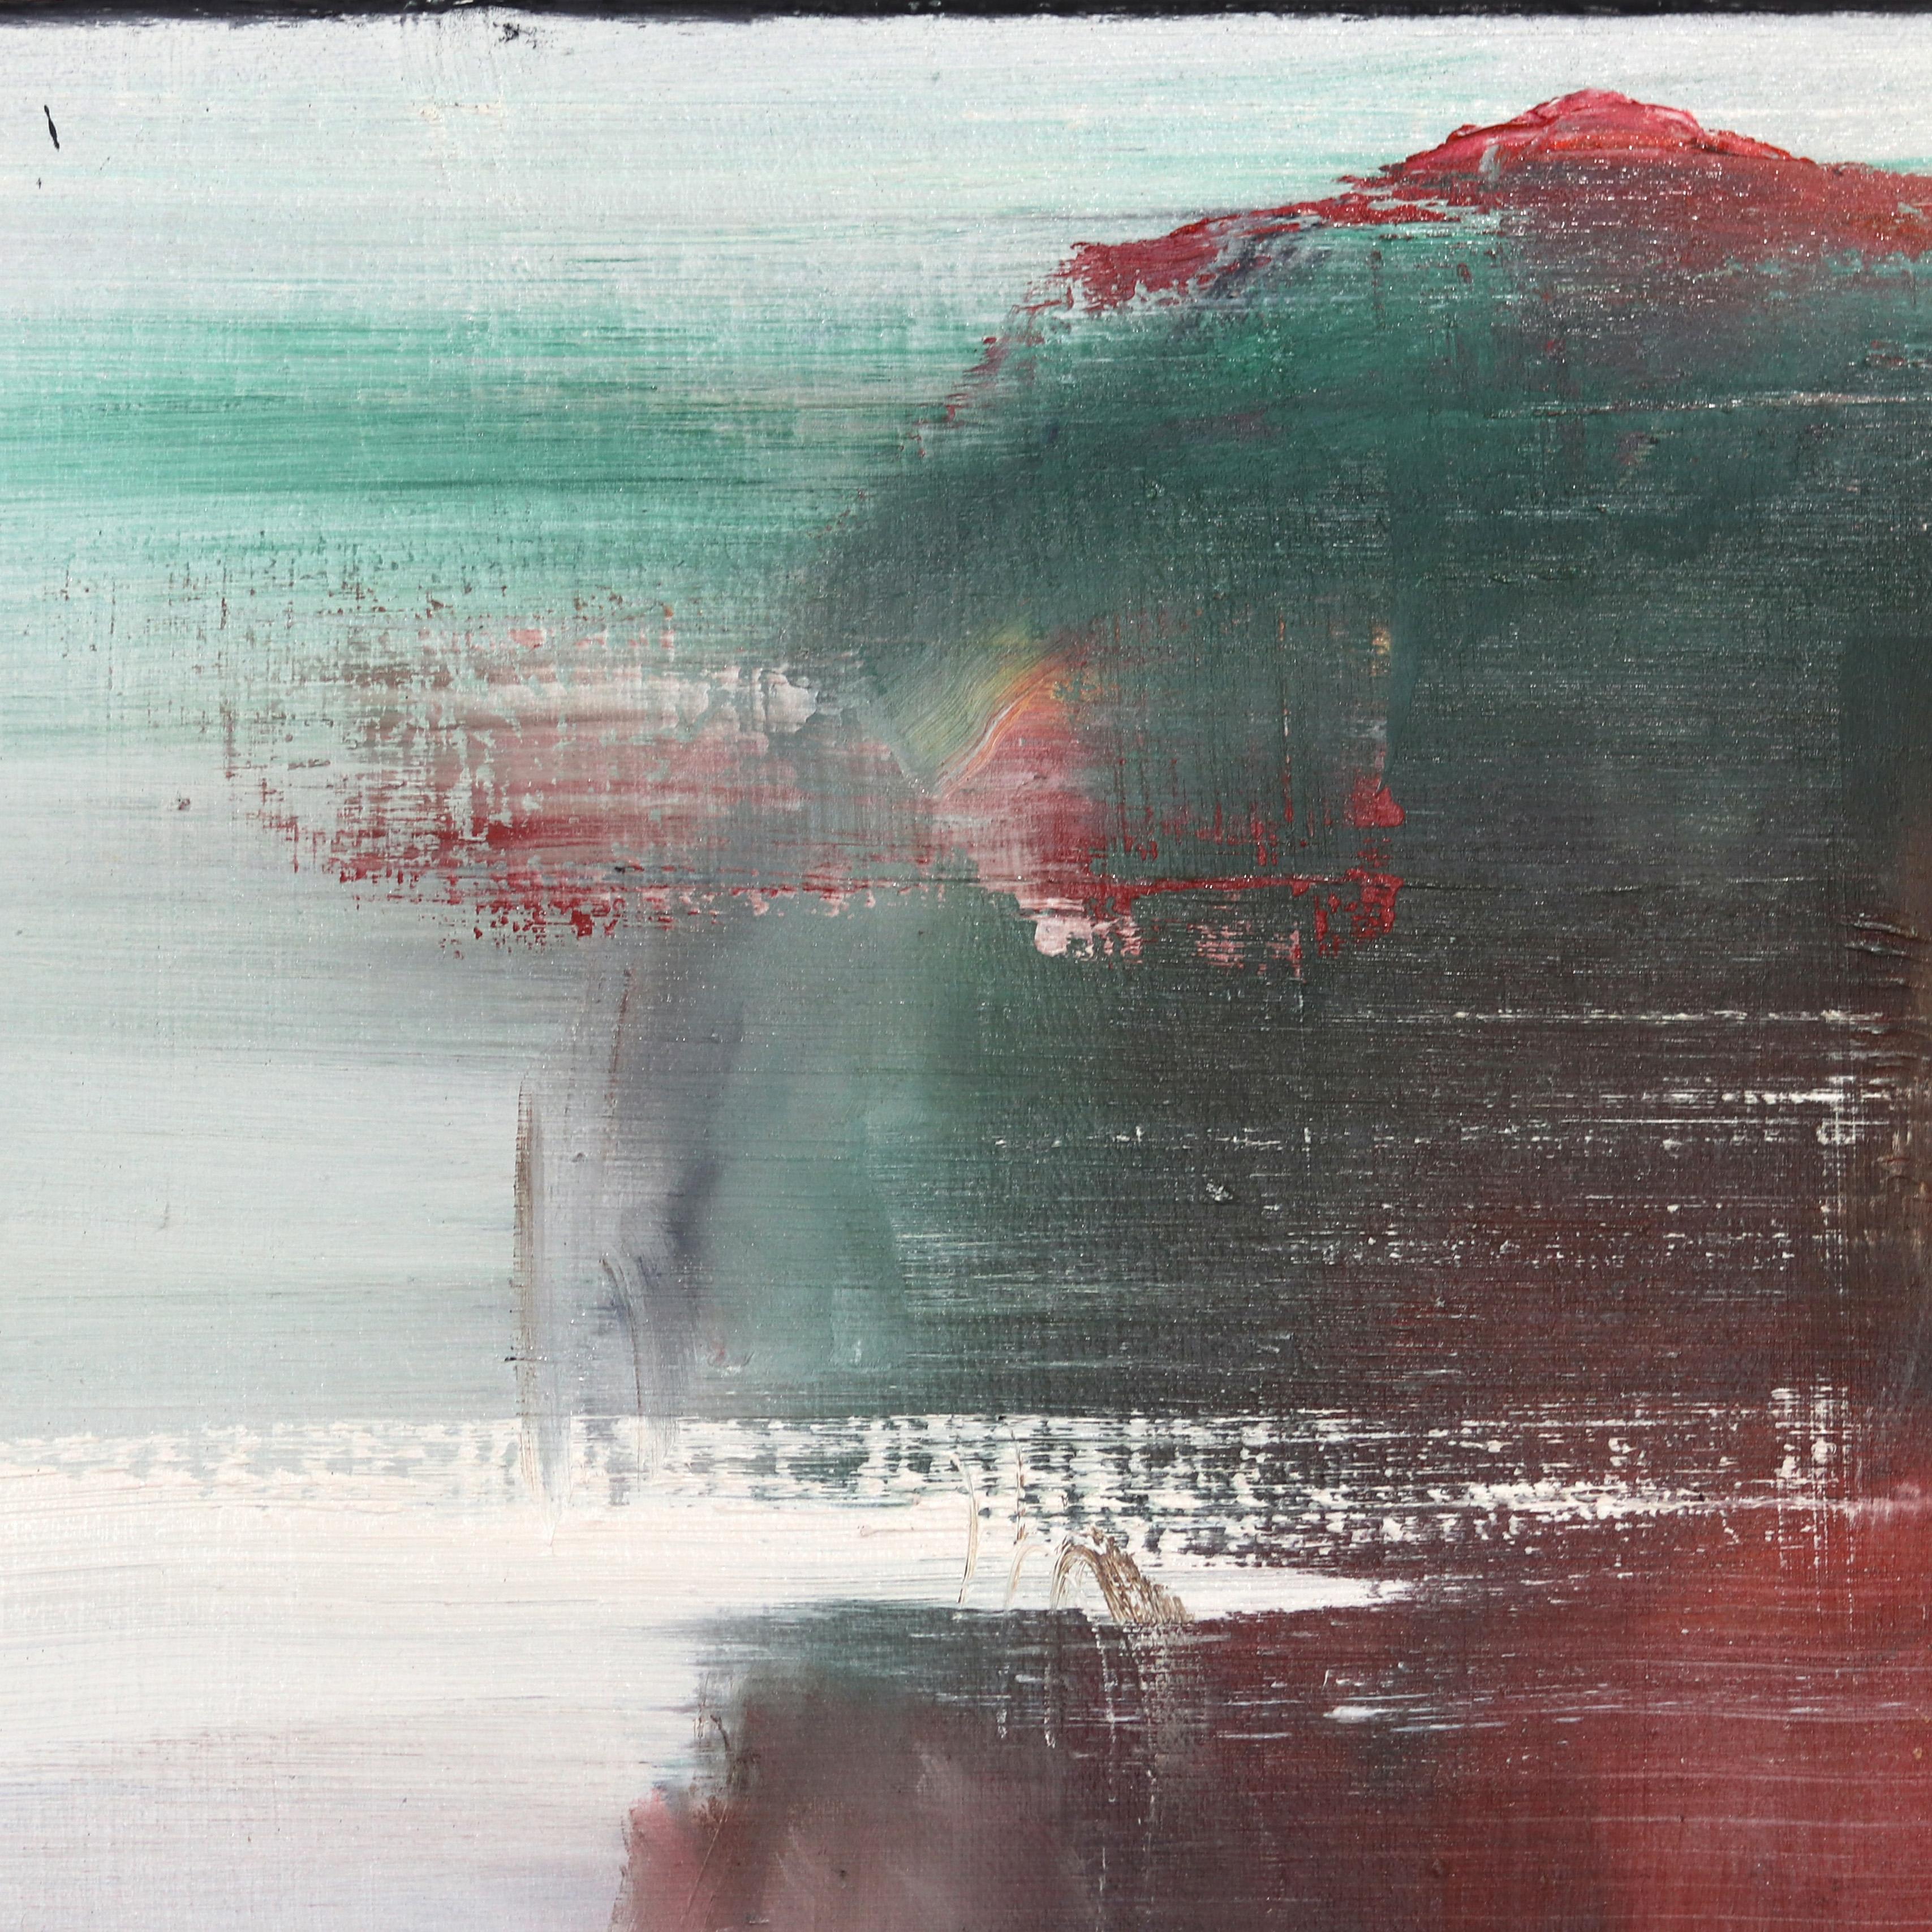 Les peintures à l'huile et les techniques mixtes de Mark Acetelli éveillent le sens de l'exploration et de l'aventure chez le spectateur ; elles exigent une nouvelle découverte. Ses œuvres présentent une alchimie de complexité et de spontanéité, une